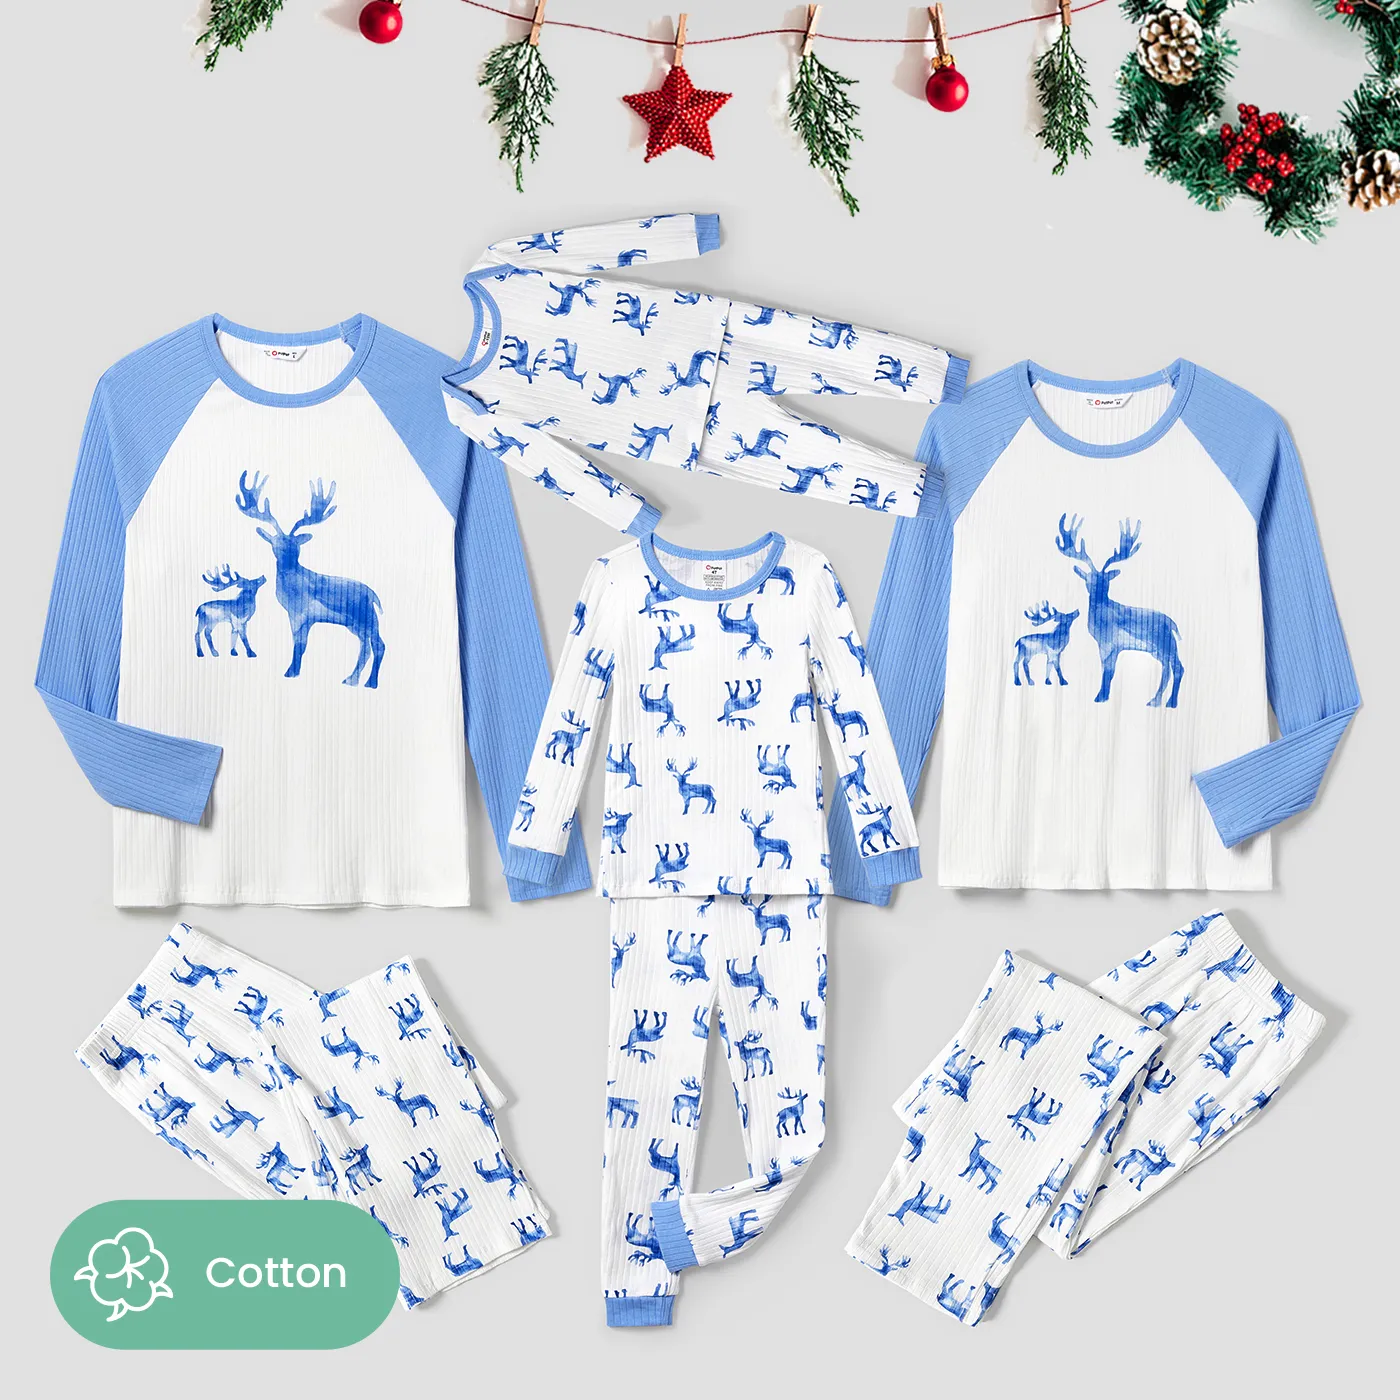 Christmas Matching Deer Print Family Snug- Fitting Pajamas Sets